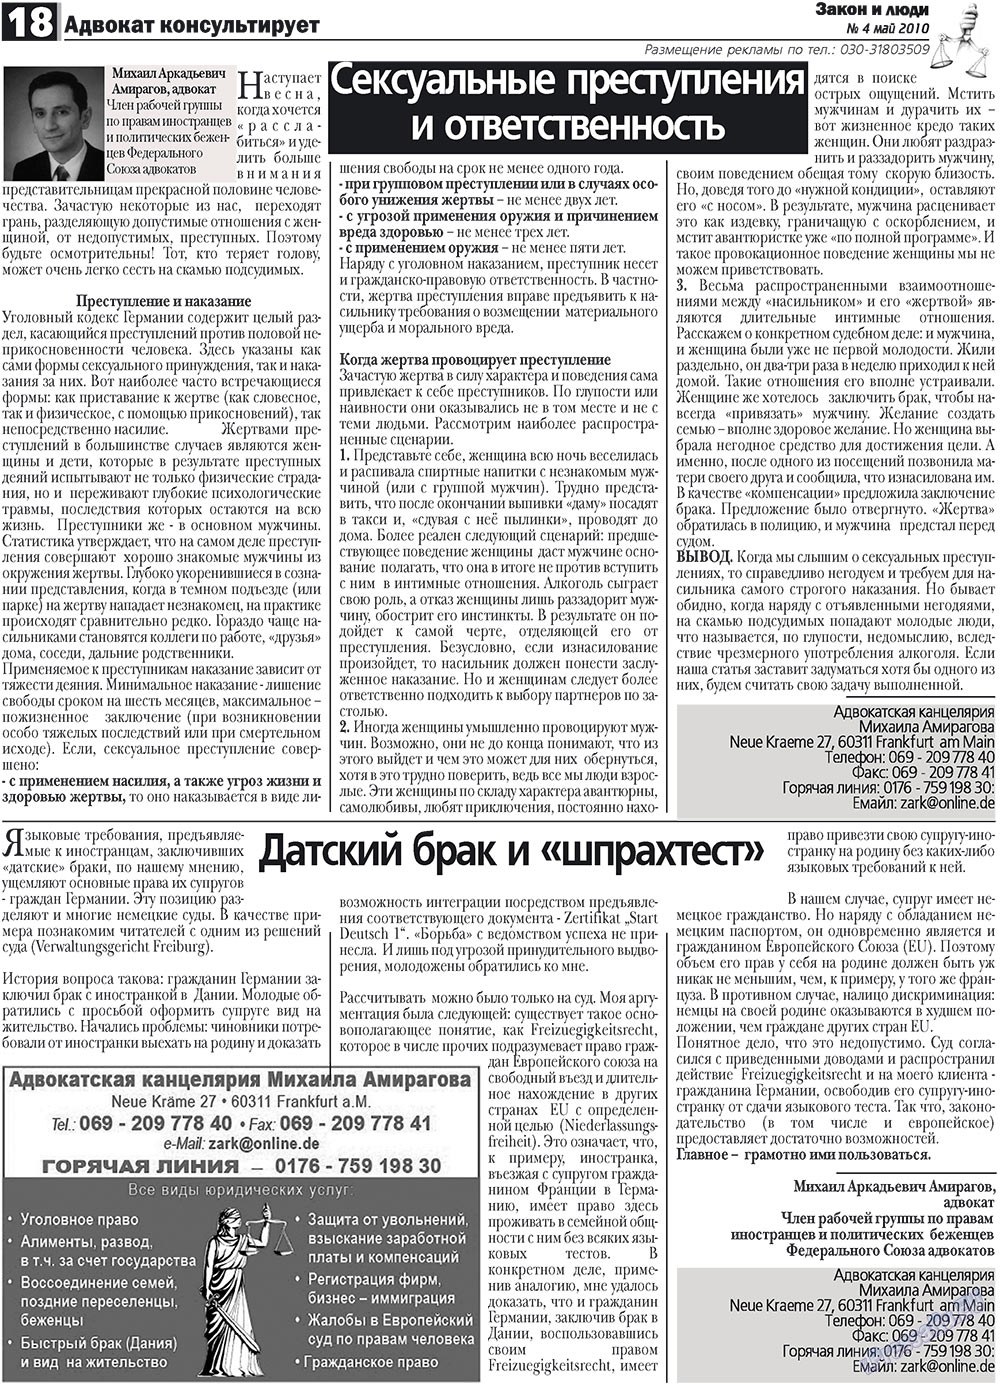 Закон и люди, газета. 2010 №4 стр.18